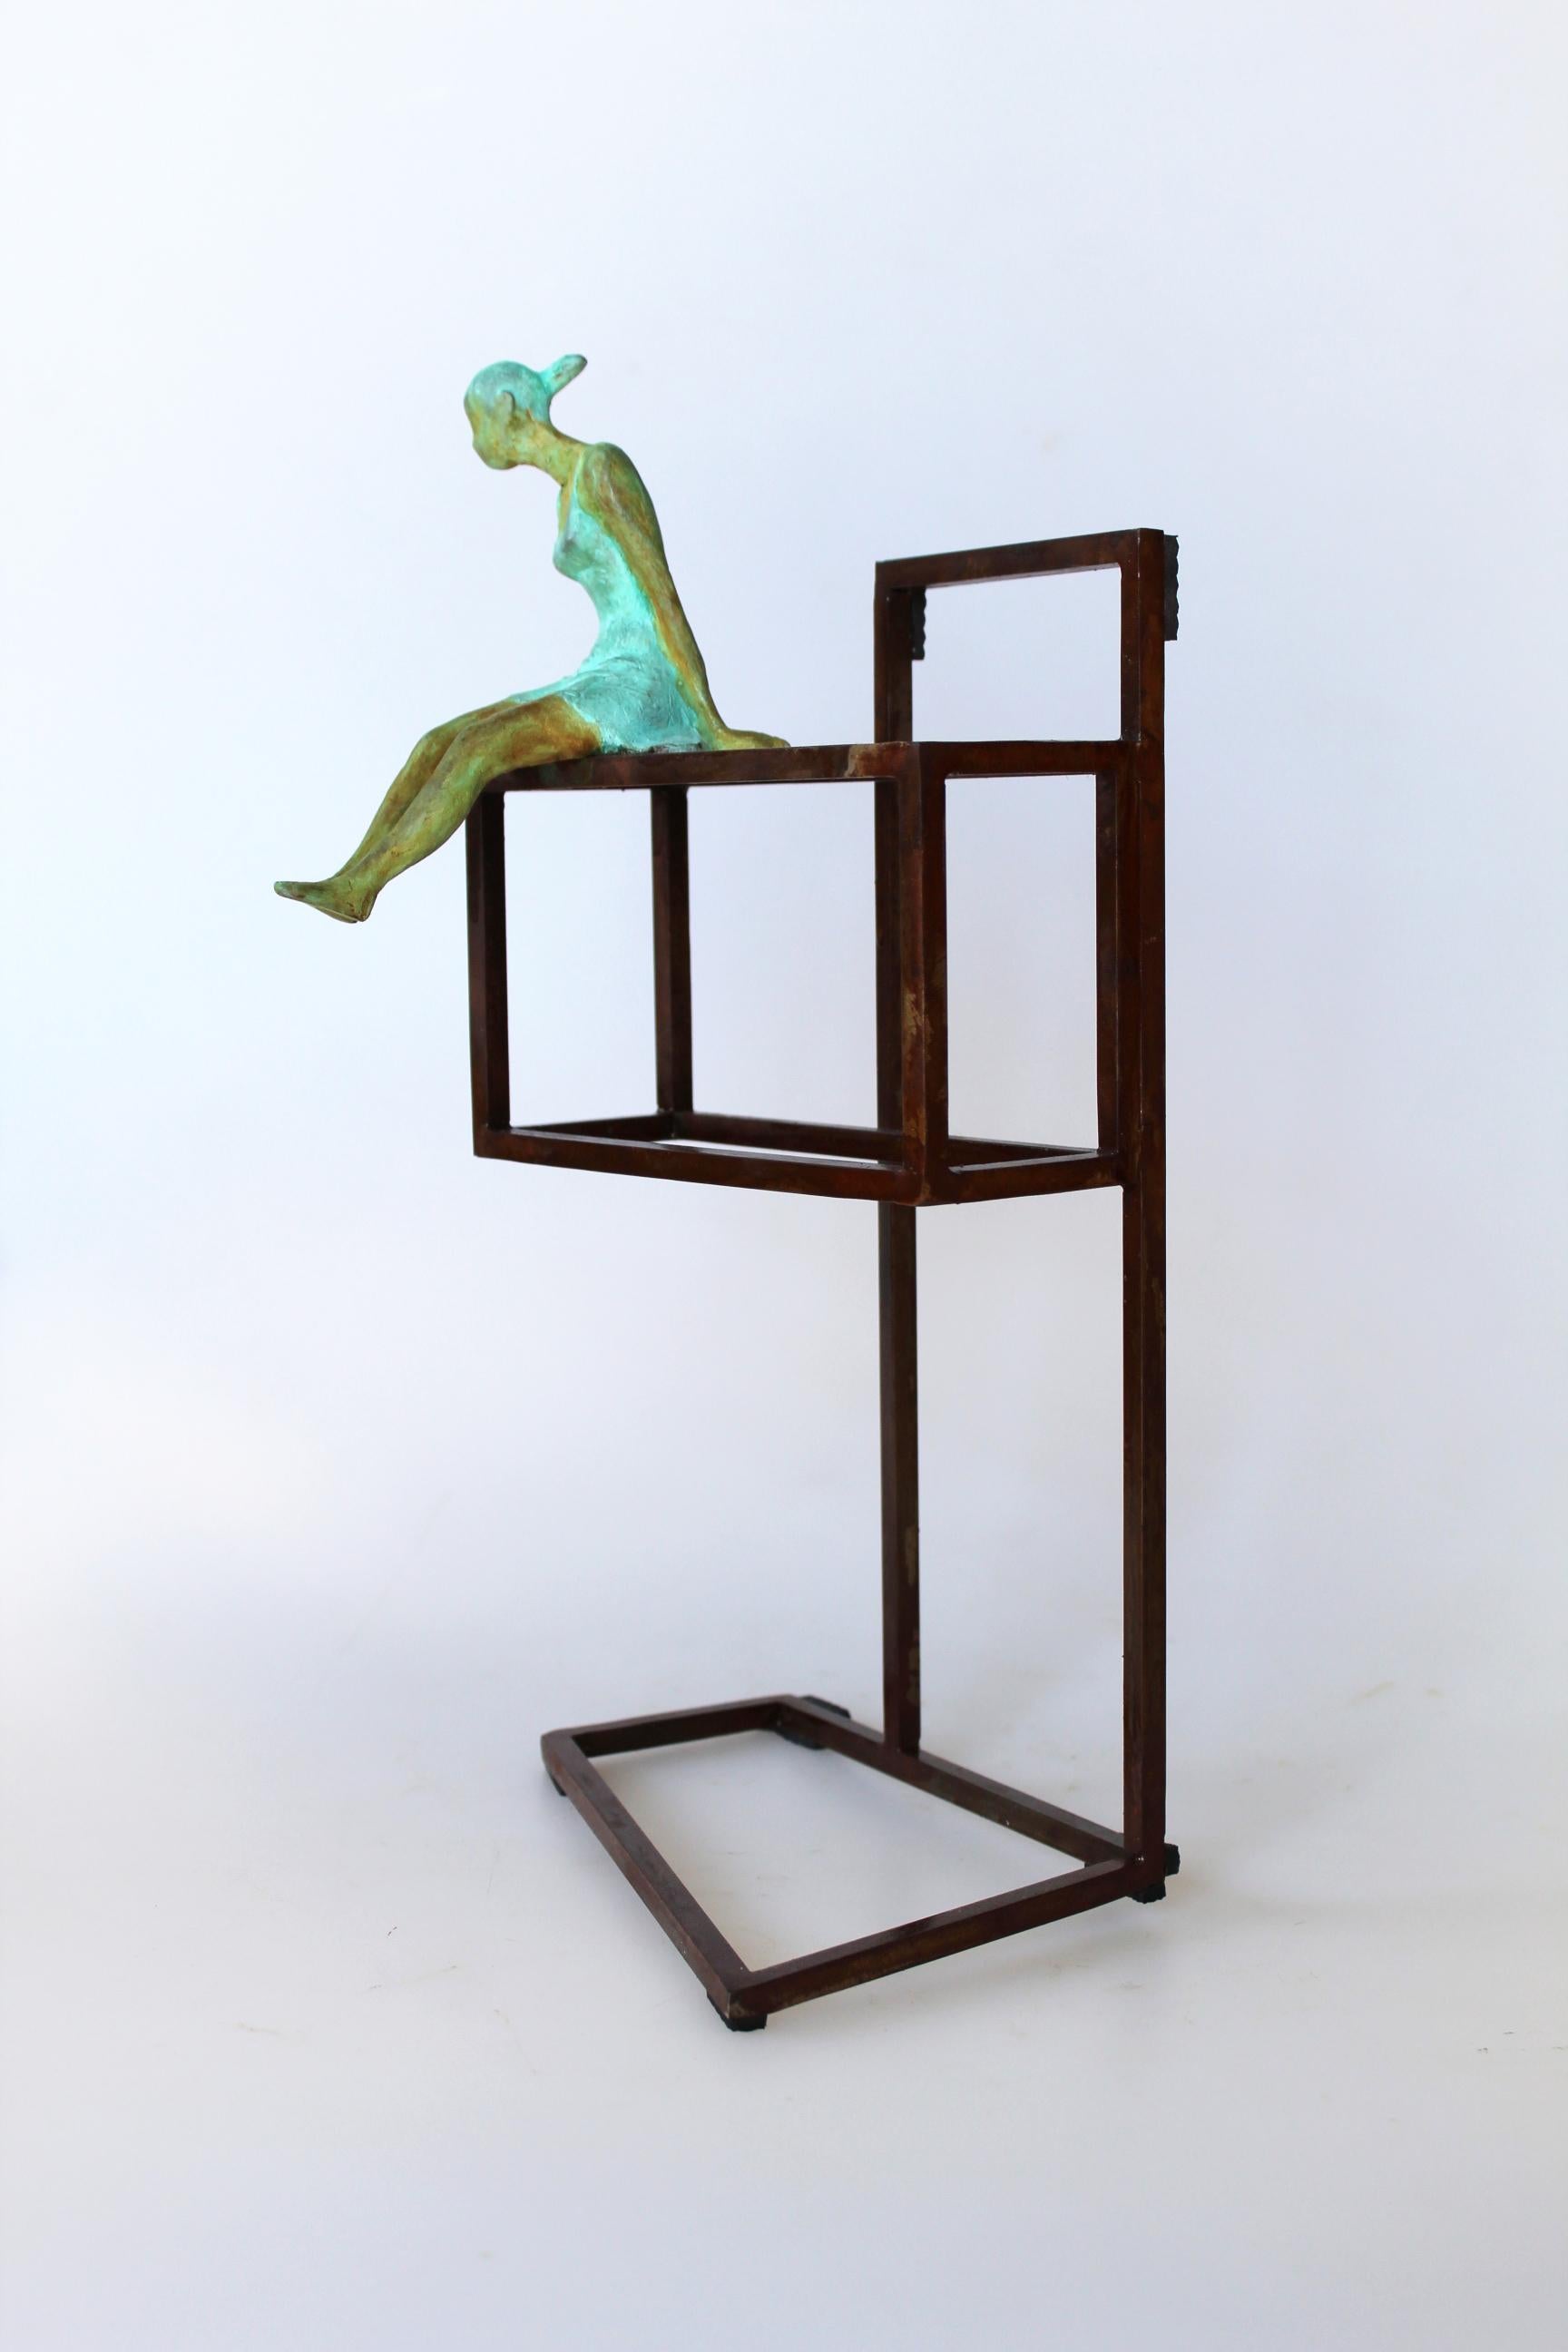 Figurative Sculpture Joan Artigas Planas - Table en bronze contemporaine « Disccovery », sculpture murale figurative « Girl freedom »